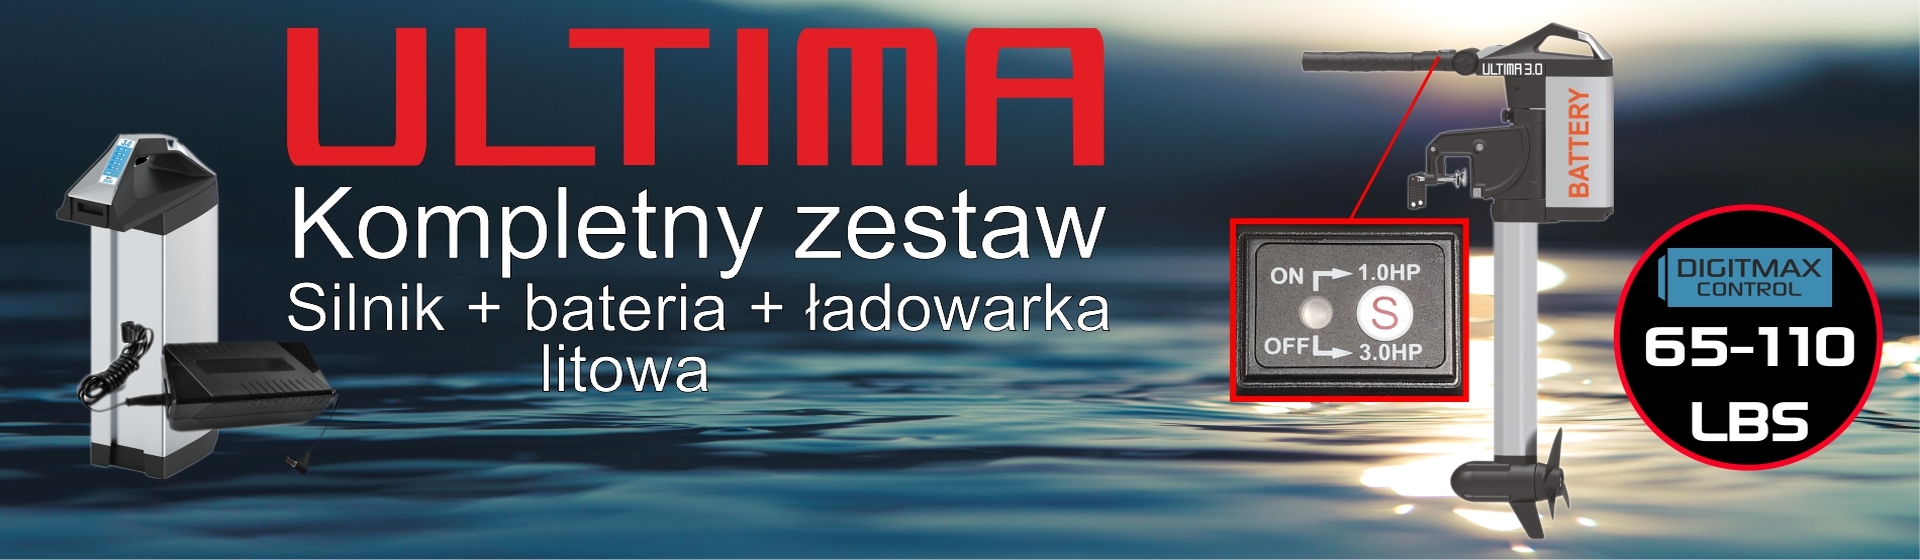 Haswing Armada Ultima informacyjny